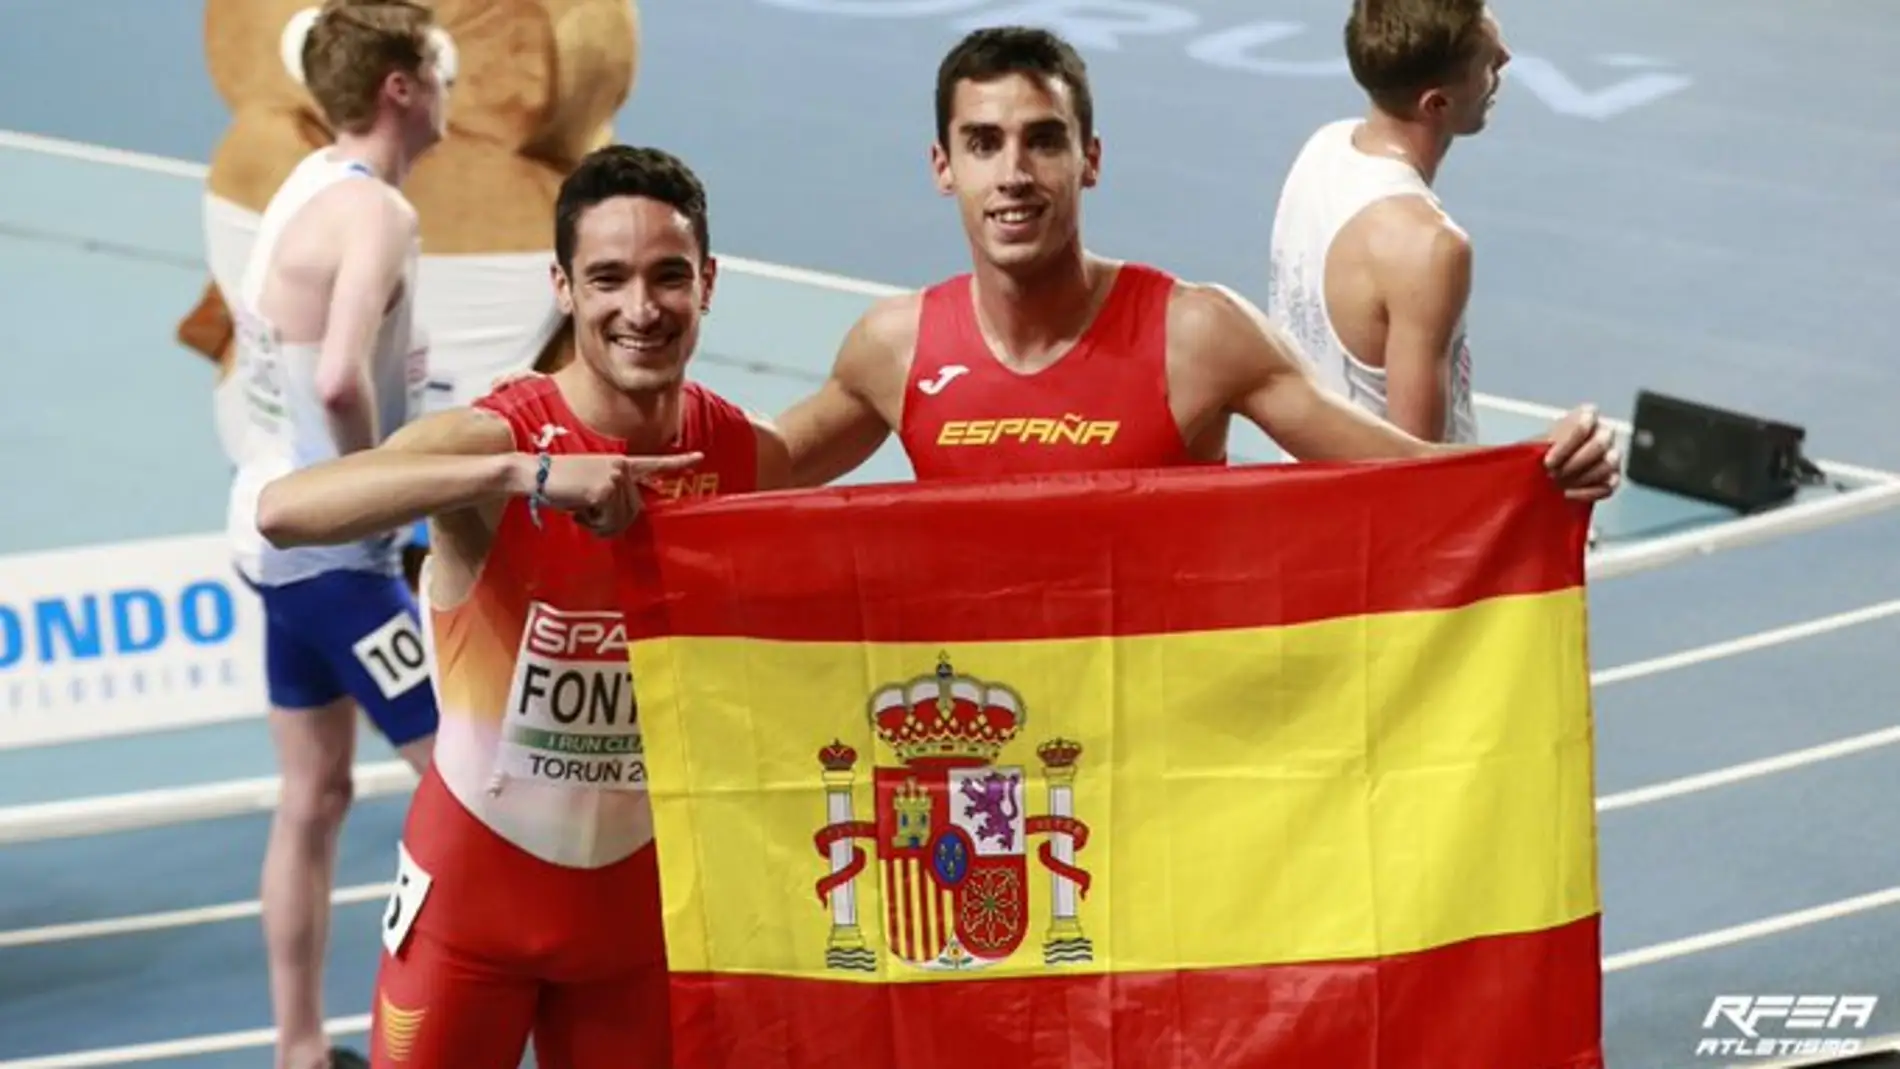 Jesús Gómez plata y Fontes bronce tras la descalificación de Ingebrigsten en el 1500 del Campeonato de Europa de Atletismo